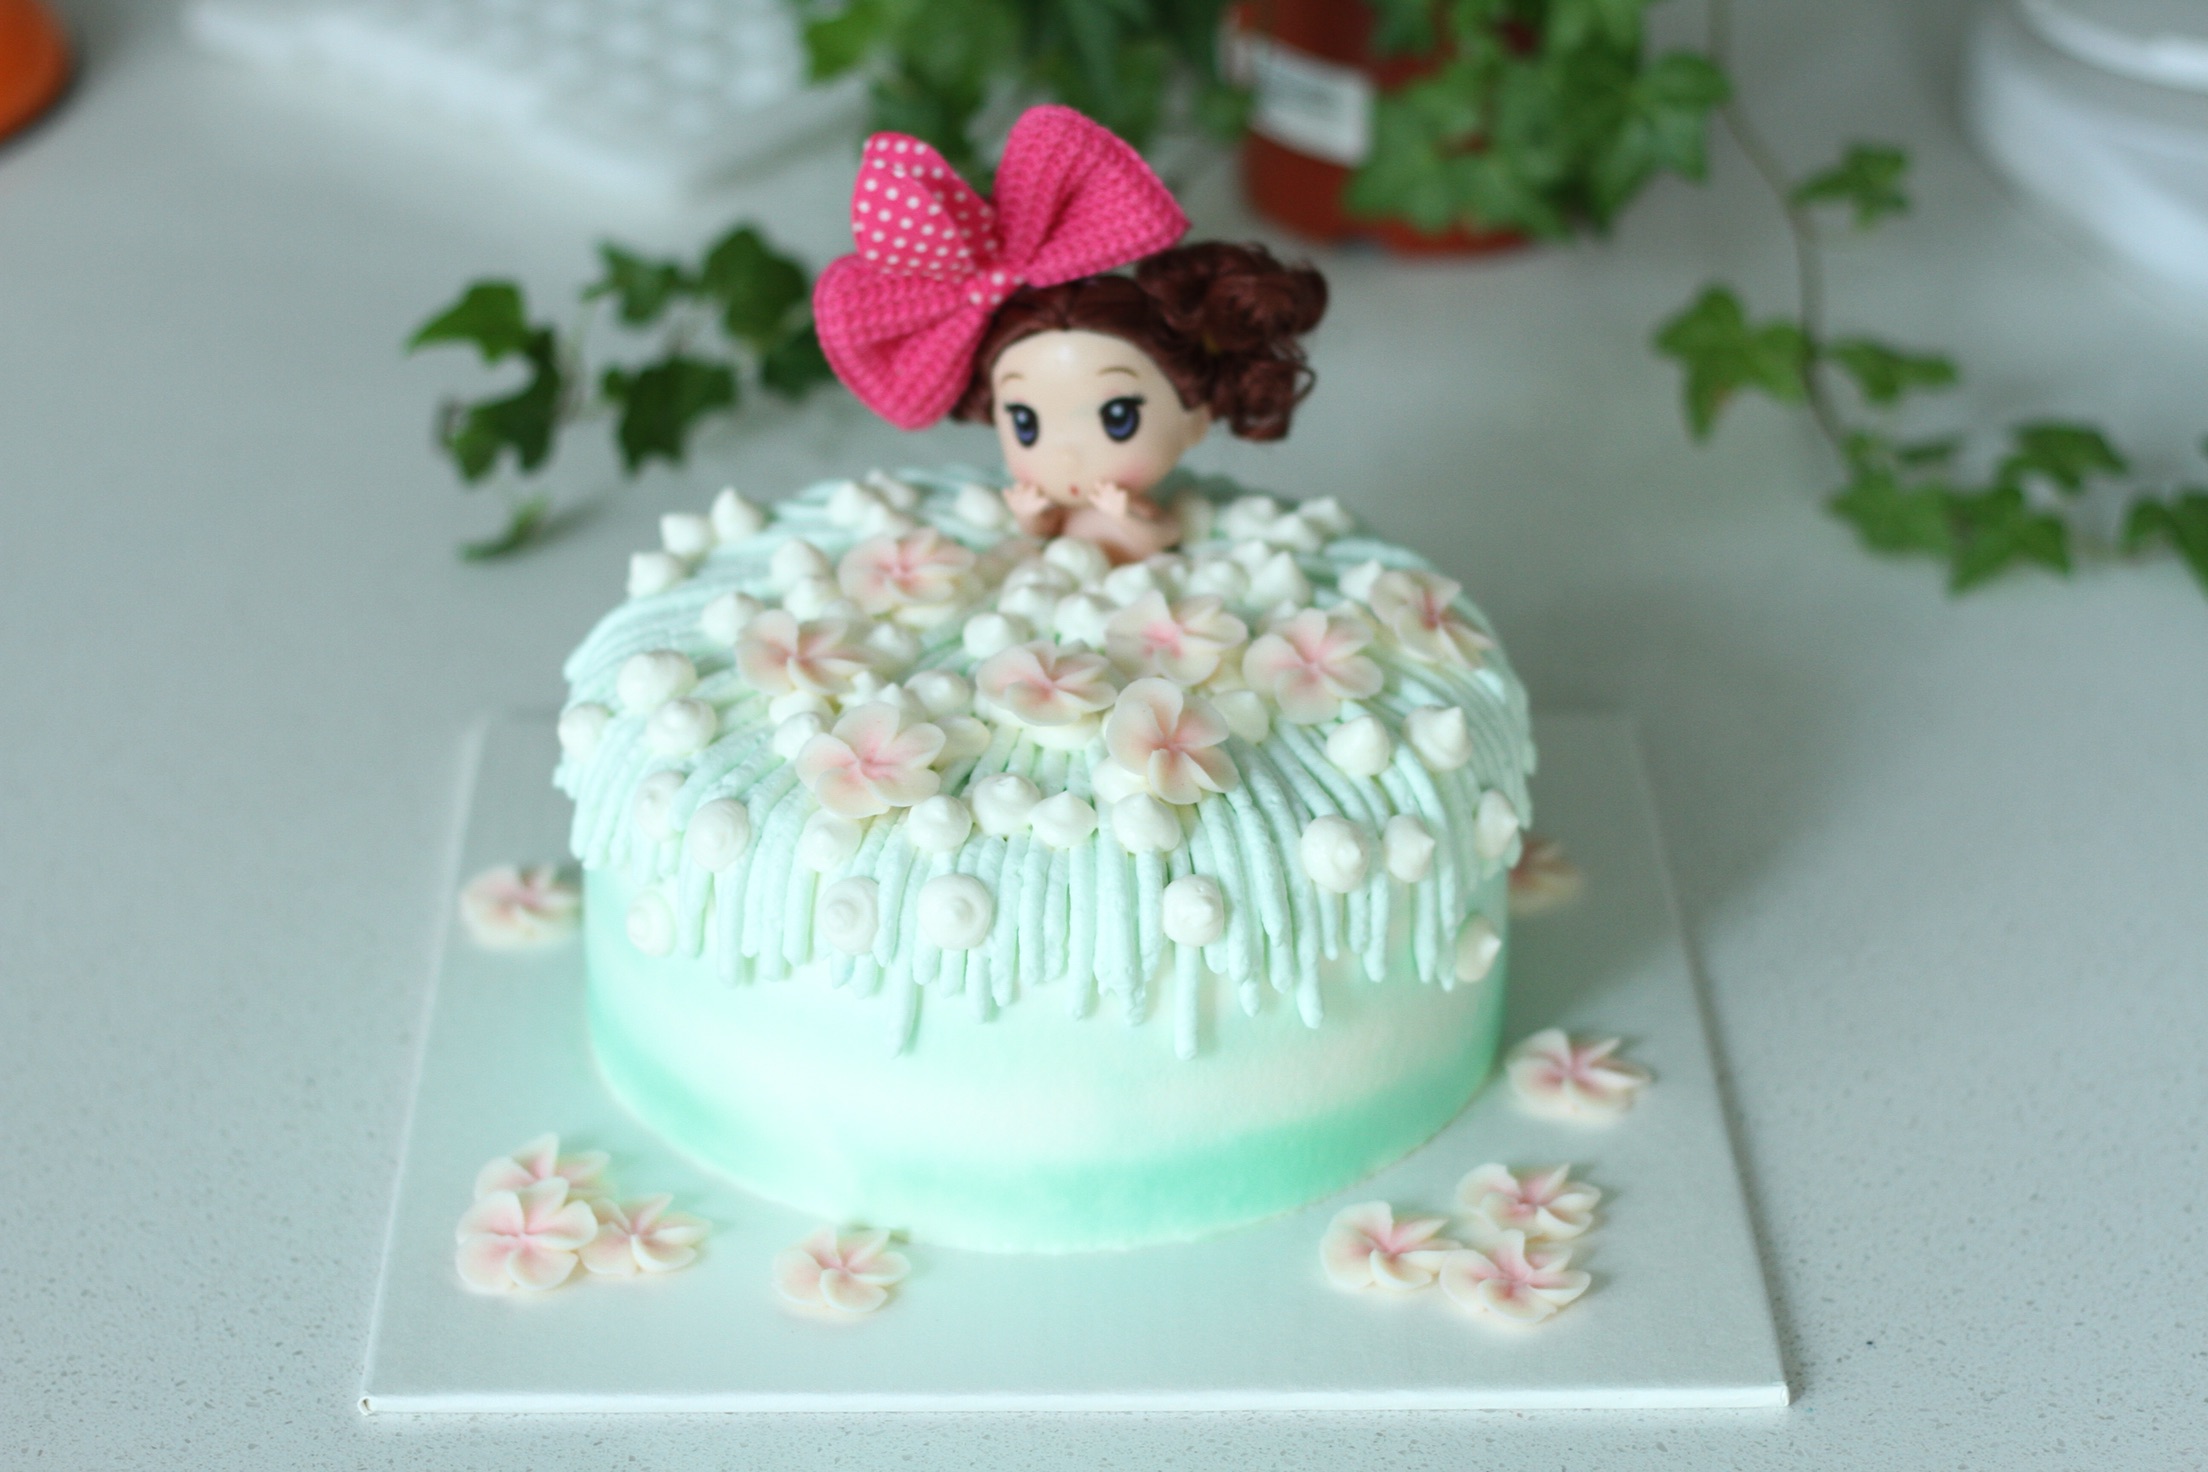 造型蛋糕 芭比娃娃 洗泡泡浴 生日蛋糕 ~ 甜點兒窩廚房